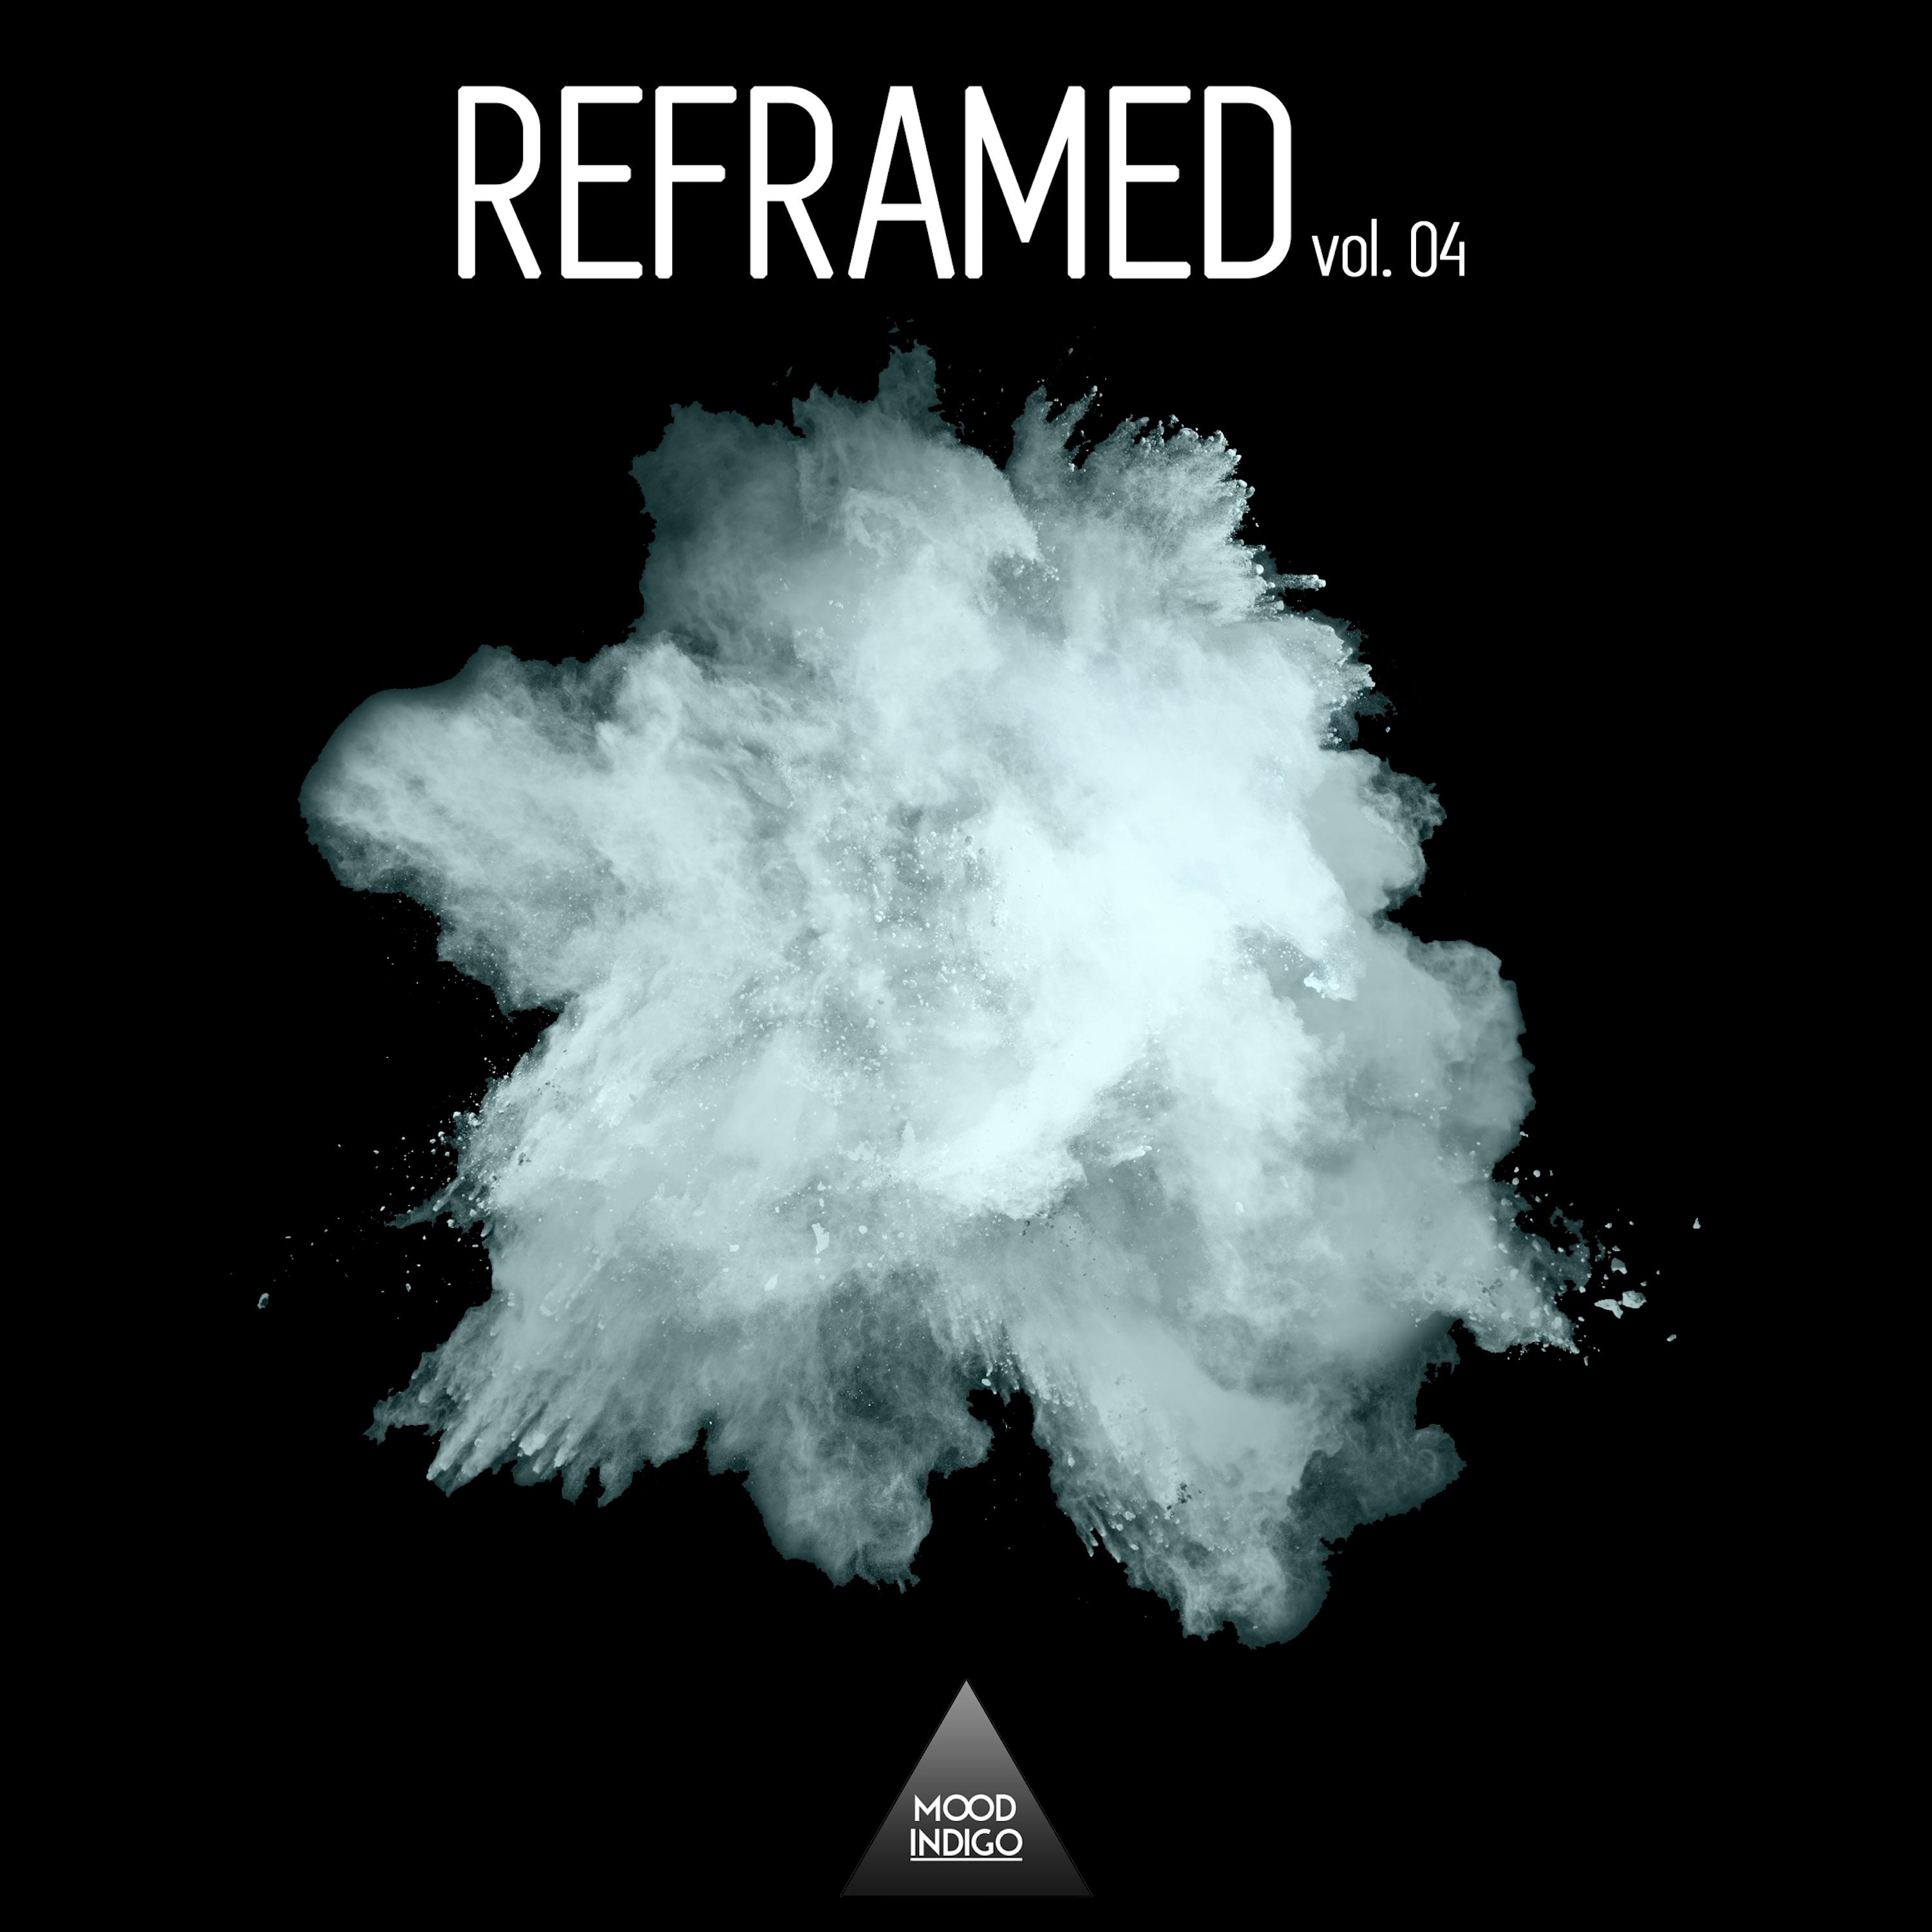 Reframed, Vol. 04